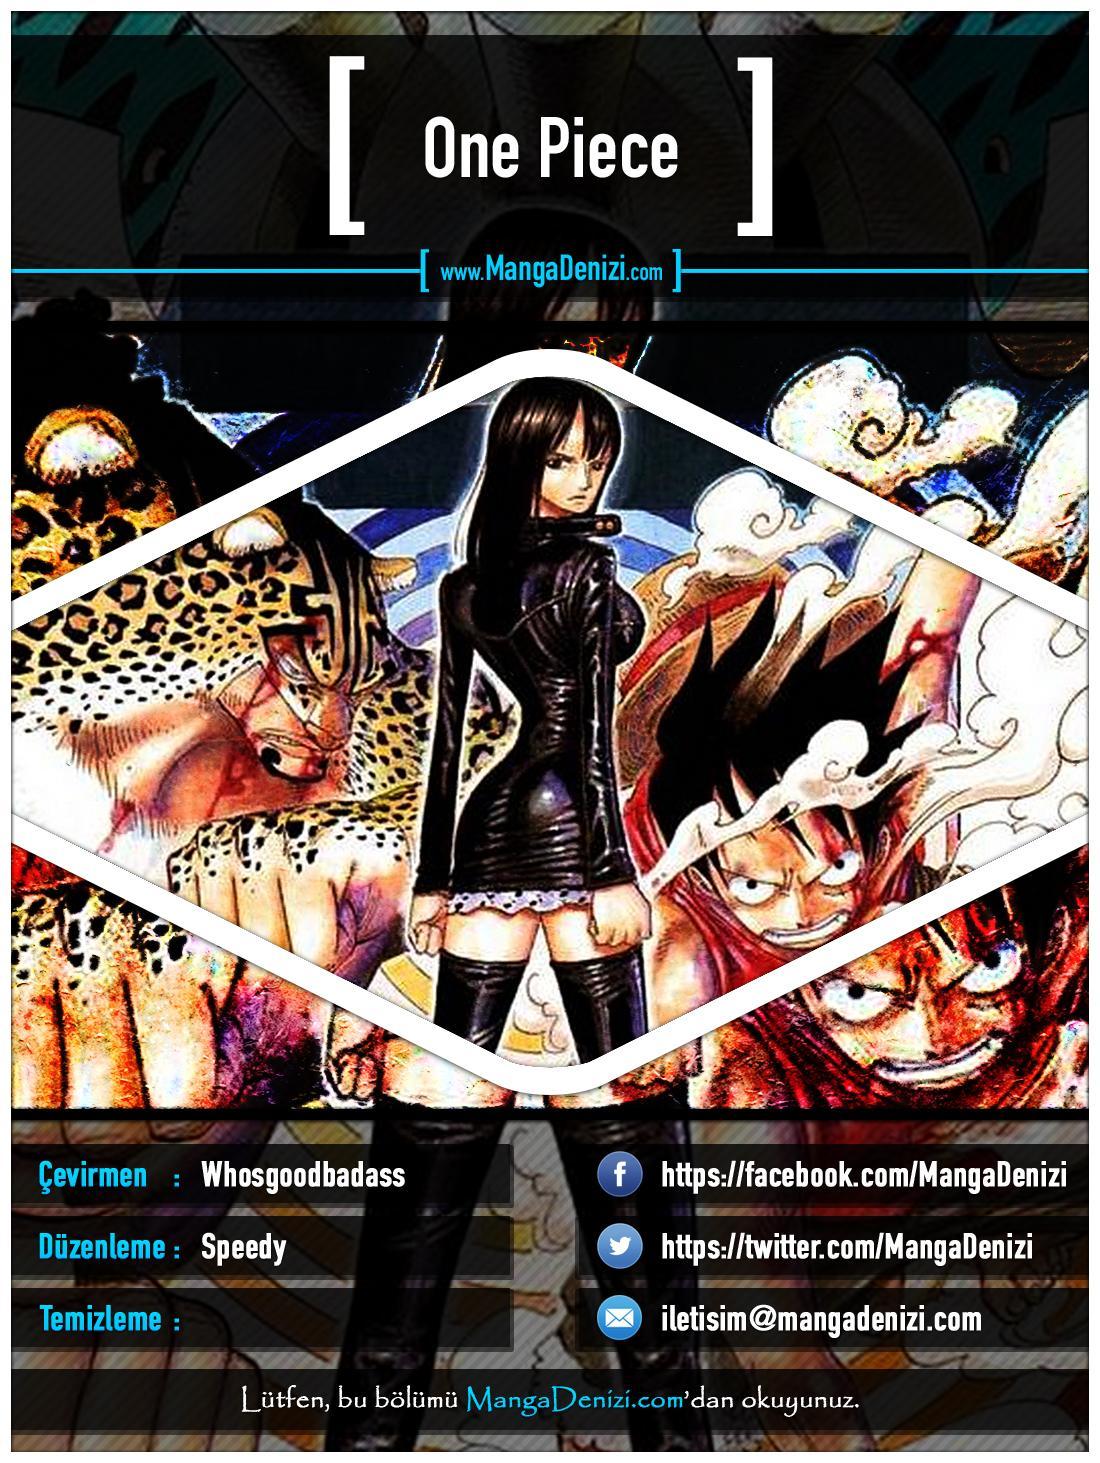 One Piece [Renkli] mangasının 0384 bölümünün 1. sayfasını okuyorsunuz.